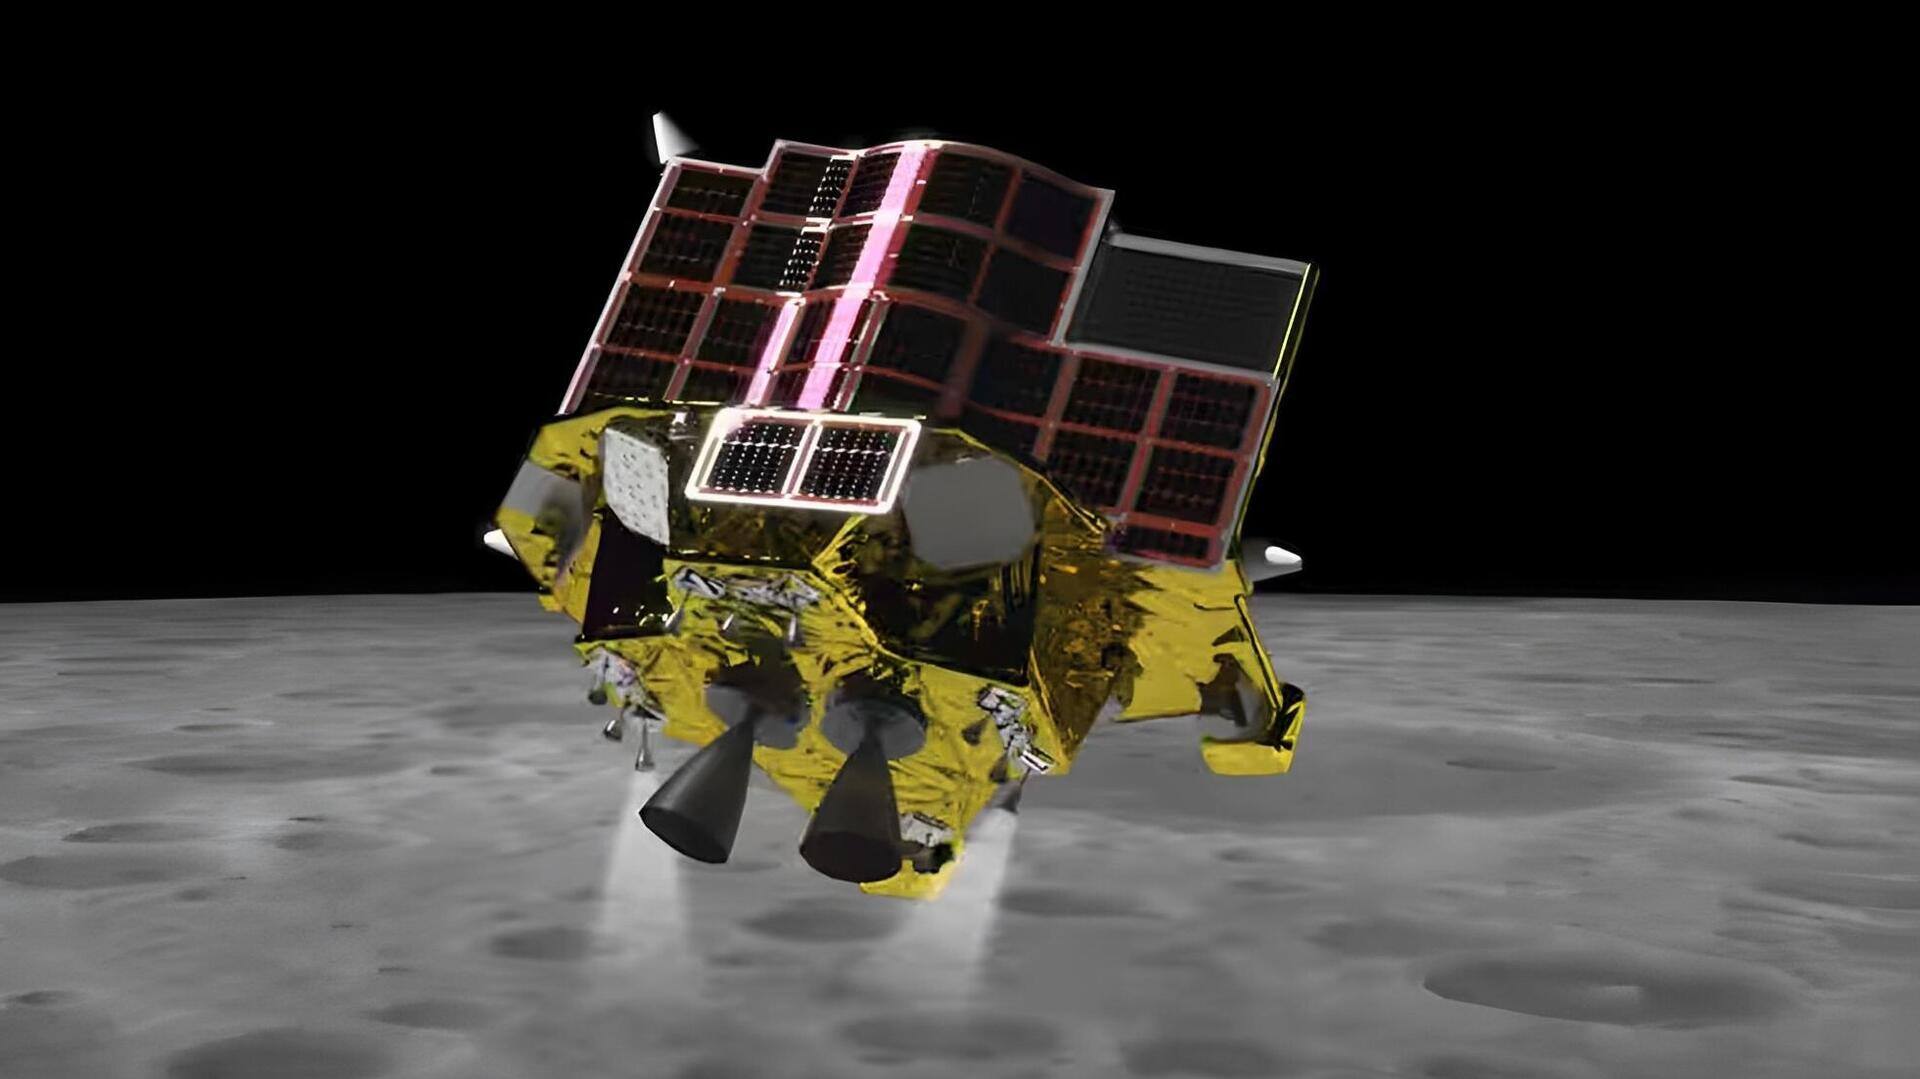 जापान 7 सितंबर को लॉन्च करेगा चांद मिशन, होगी पिनपॉइंट लैंडिंग